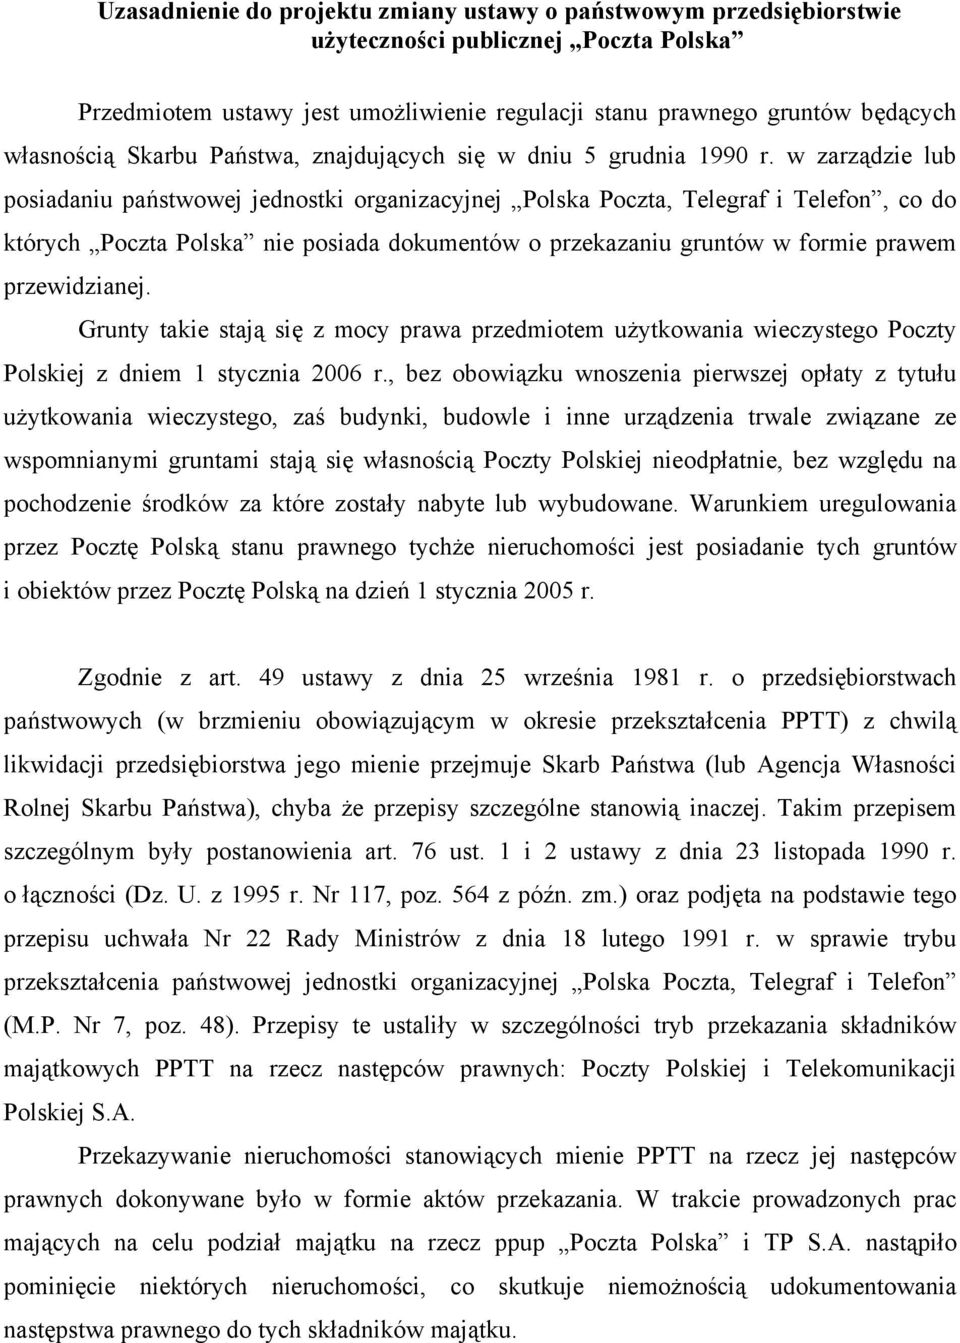 w zarządzie lub posiadaniu państwowej jednostki organizacyjnej Polska Poczta, Telegraf i Telefon, co do których Poczta Polska nie posiada dokumentów o przekazaniu gruntów w formie prawem